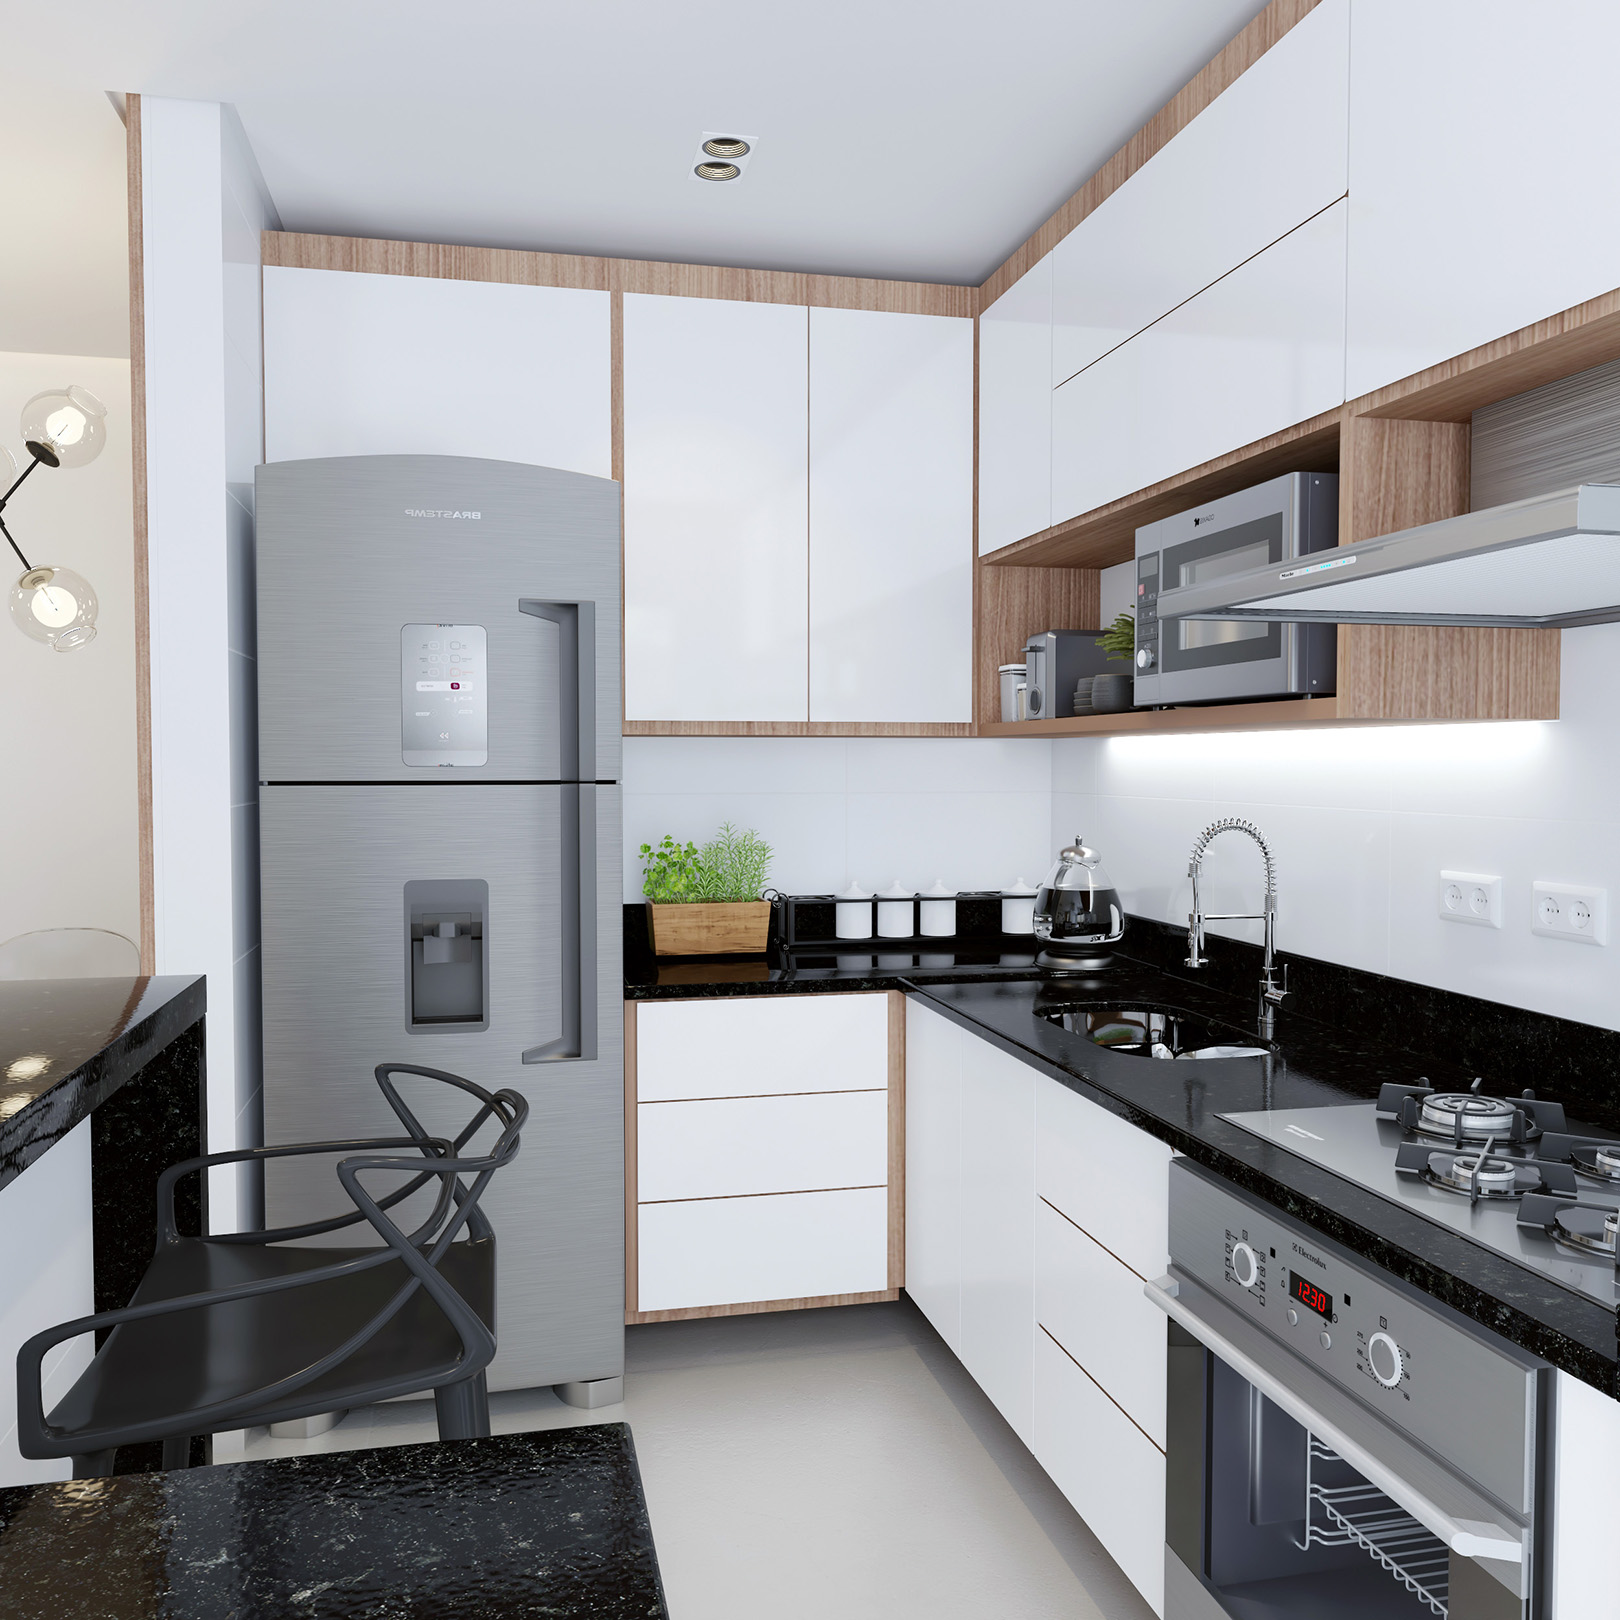 Pettra-apartamento-cozinha1-v01.jpg